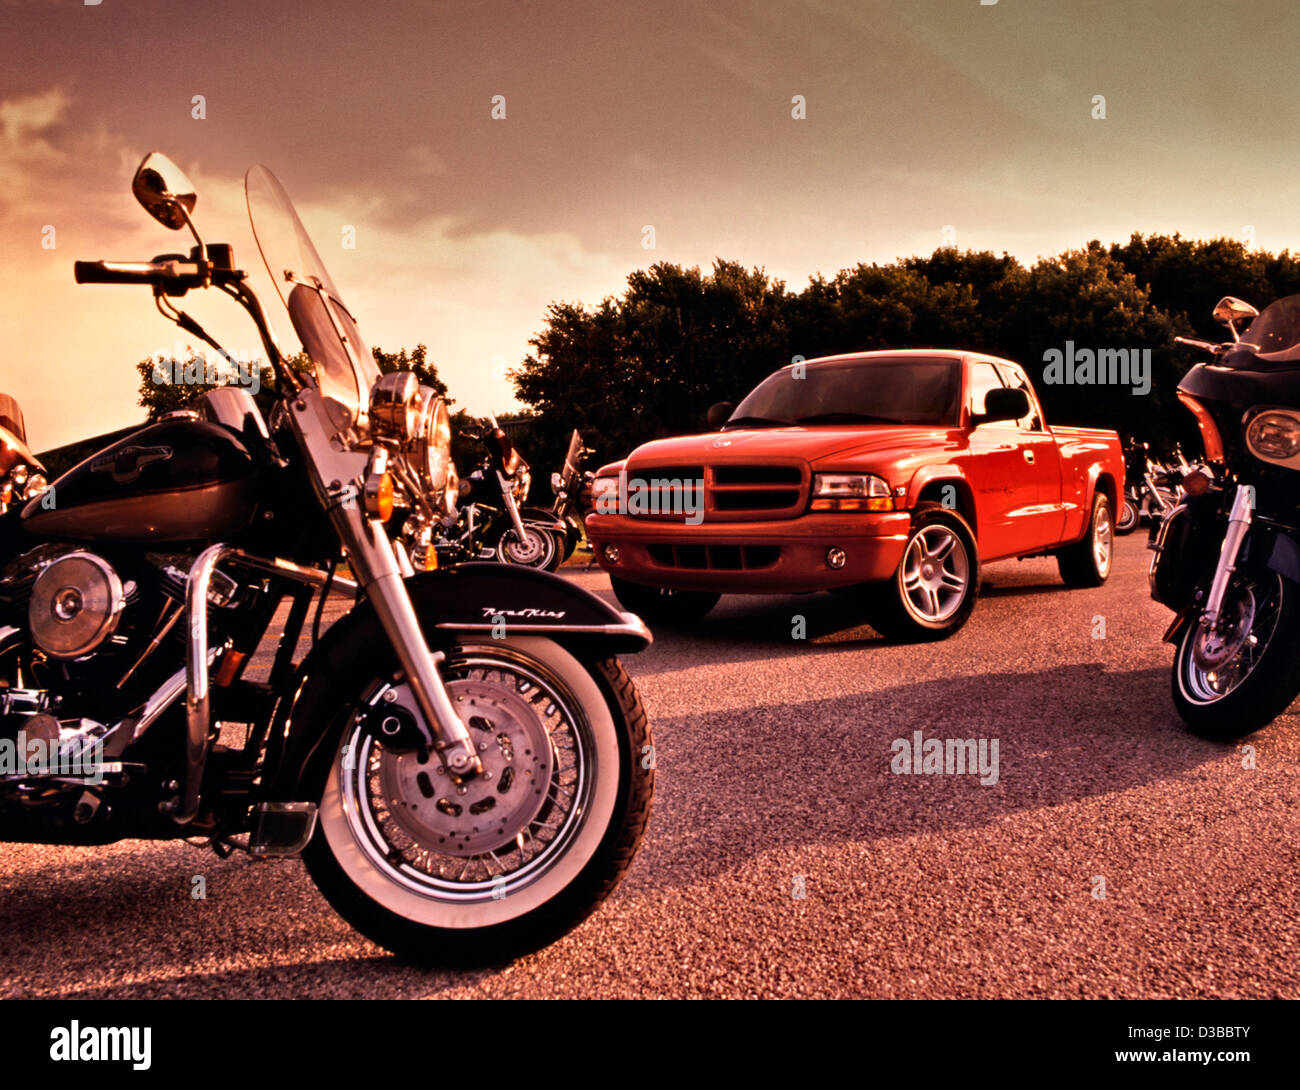 Dodge Dakota Pick up truck et Harley Davidson Road King motos Banque D'Images